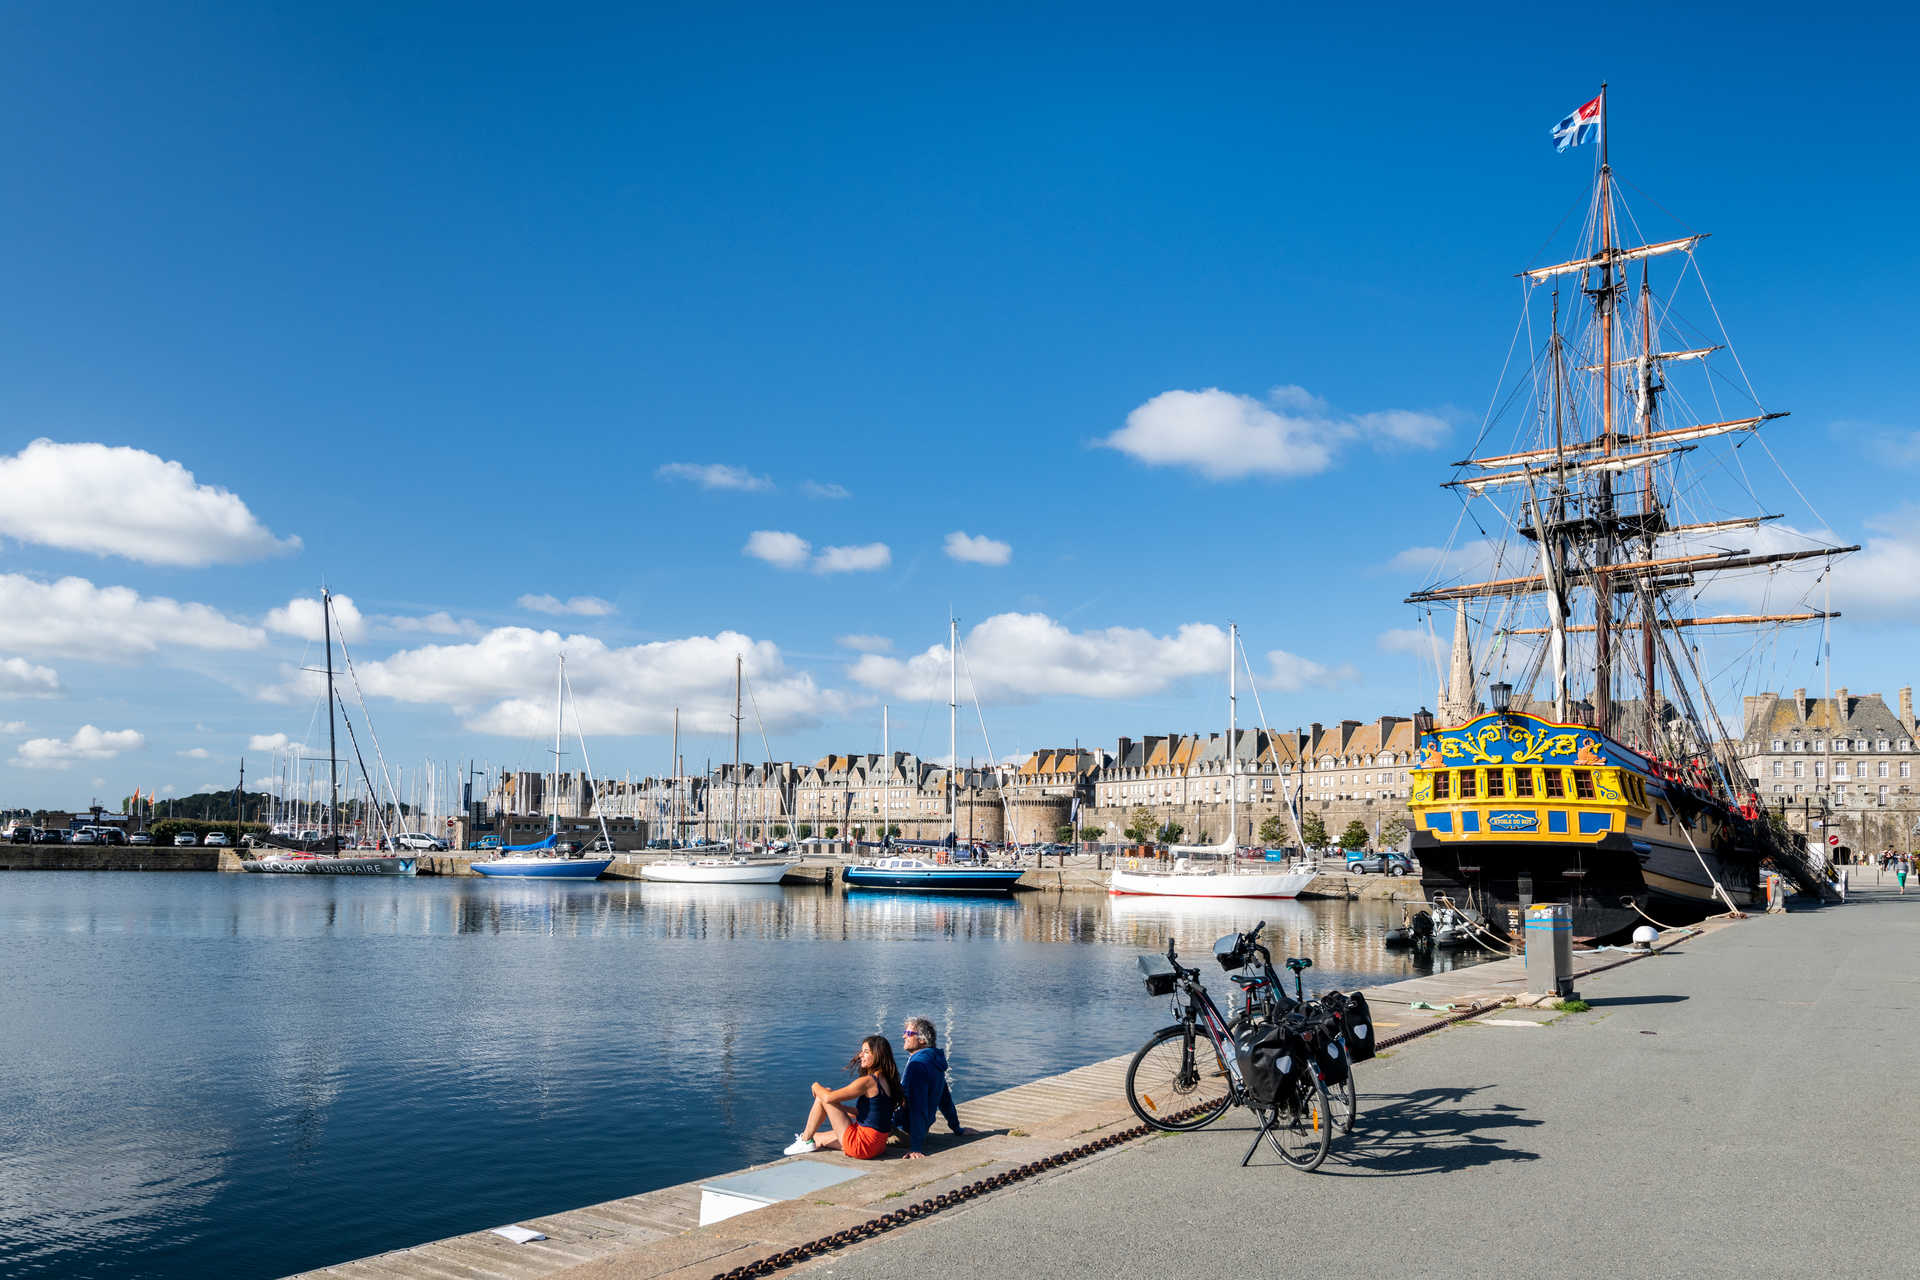 Cyclistes sur le port de Saint Malo avec le bateau l'étoile du roy en fond